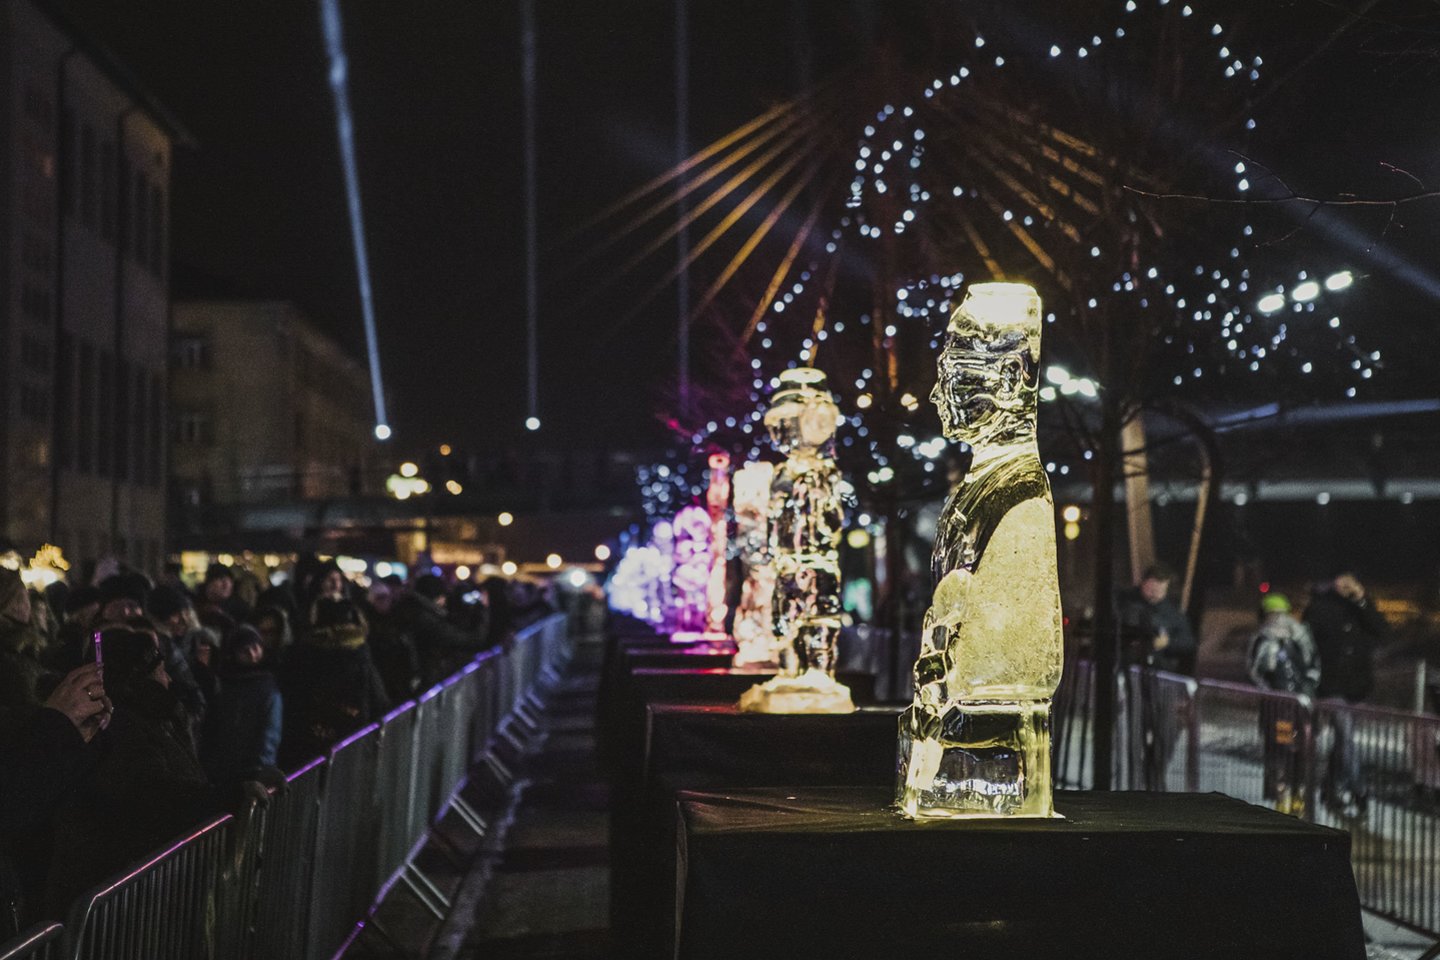   Jelgavoje vyksta 21-asis ledo skulptūrų festivalis. Šiemetinės šventės tema - kinas.<br> Organizatorių nuotr.